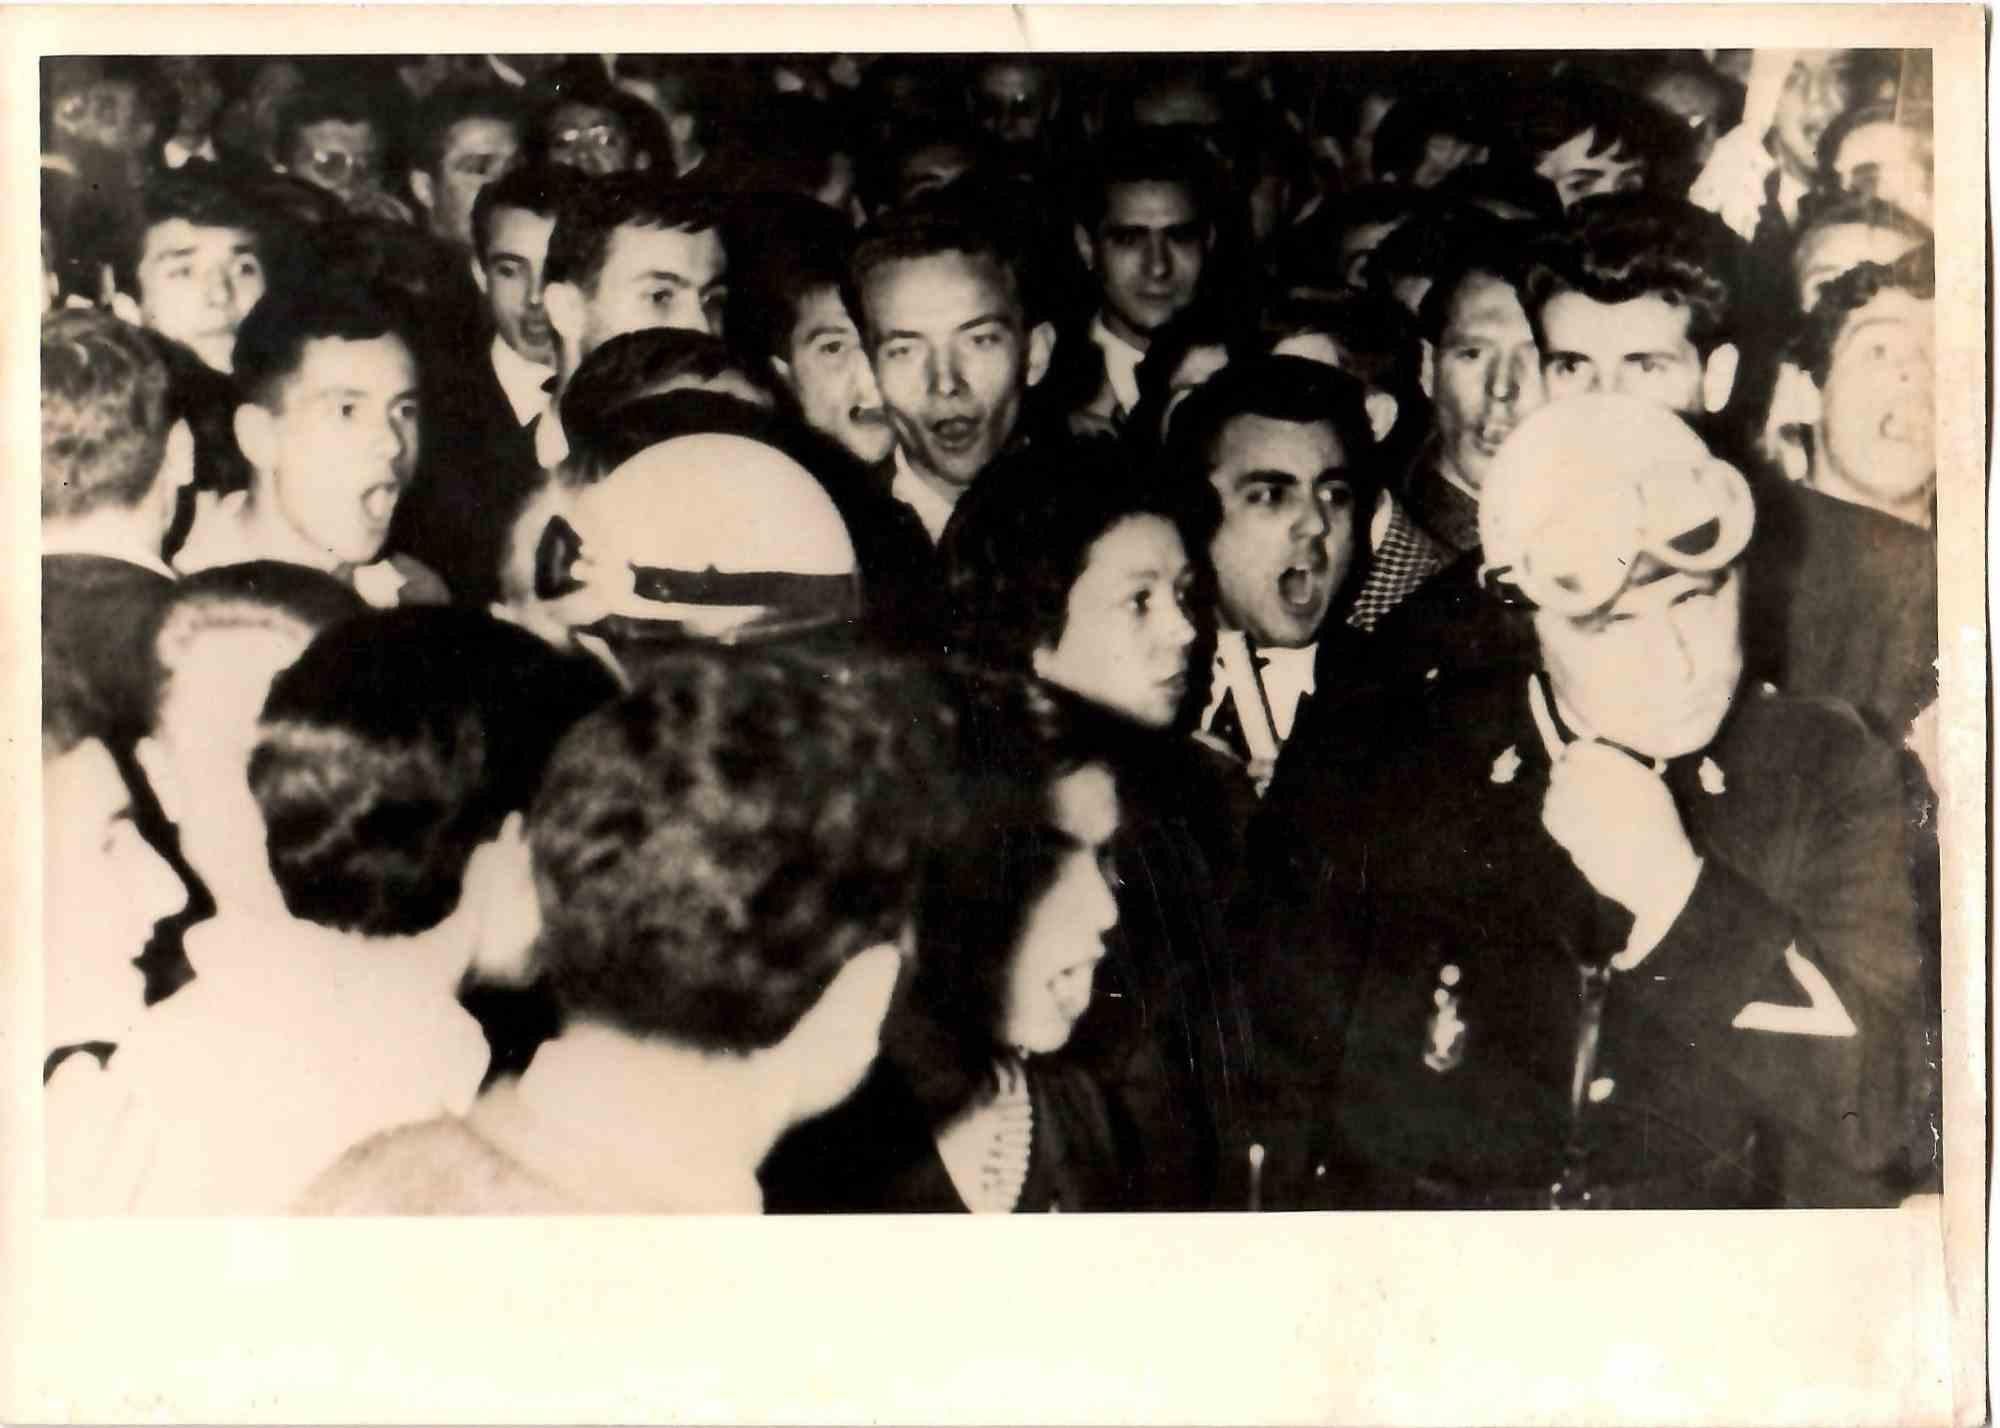 The Crowd Behind the Policemen (La foule derrière les policiers), Algérie - Photographie vintage, milieu du 20e siècle